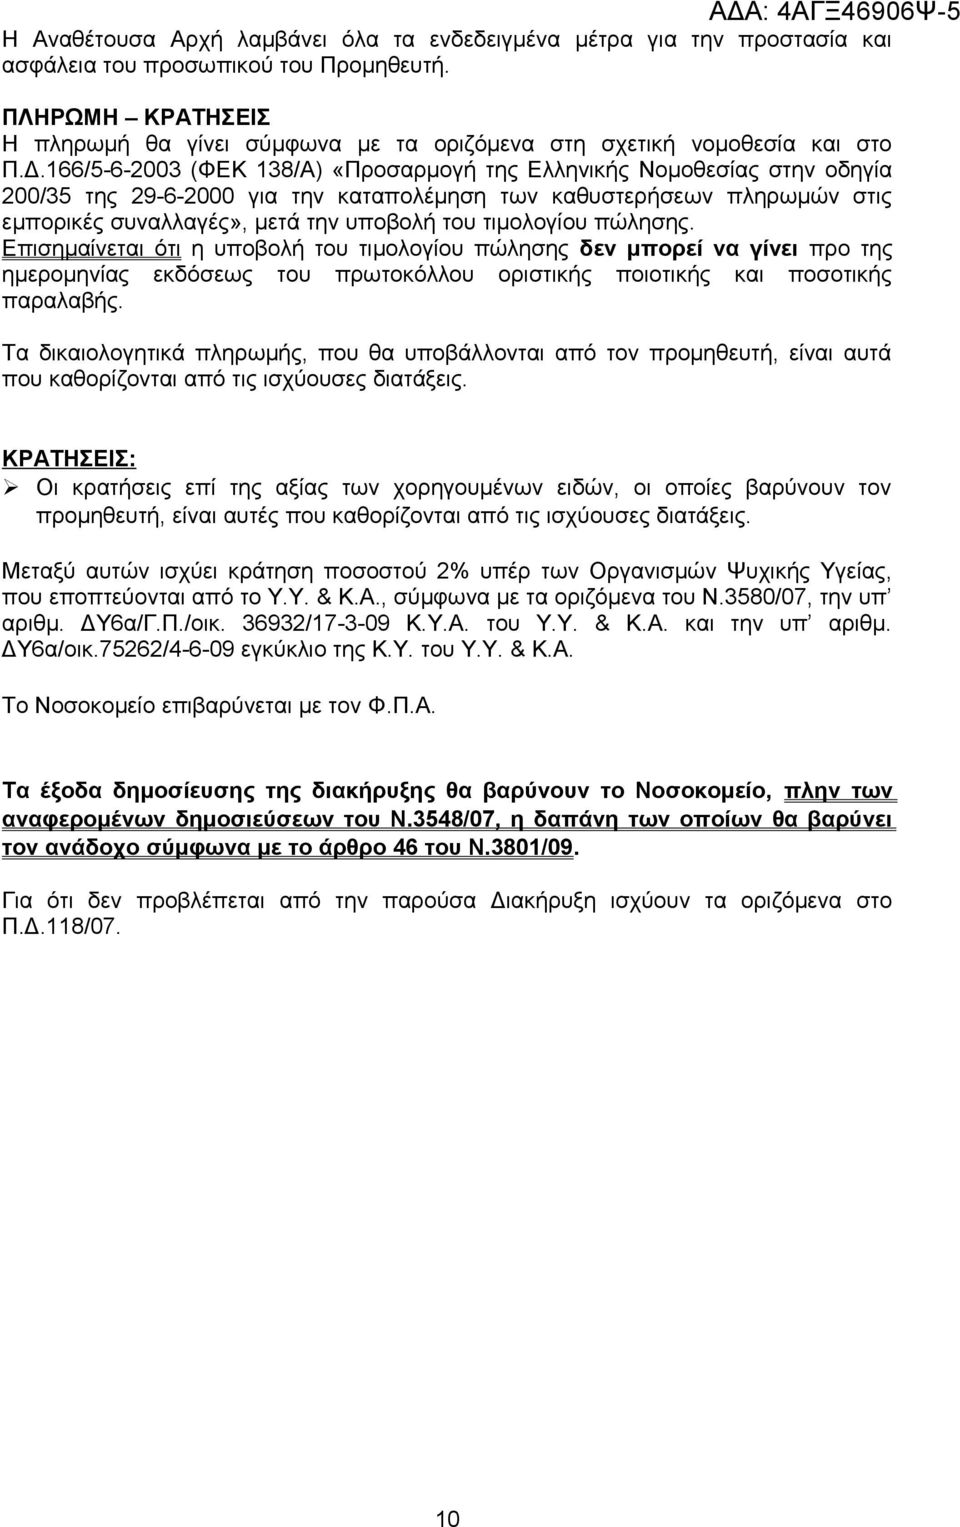 166/5-6-2003 (ΦΕΚ 138/Α) «Προσαρμογή της Ελληνικής Νομοθεσίας στην οδηγία 200/35 της 29-6-2000 για την καταπολέμηση των καθυστερήσεων πληρωμών στις εμπορικές συναλλαγές», μετά την υποβολή του